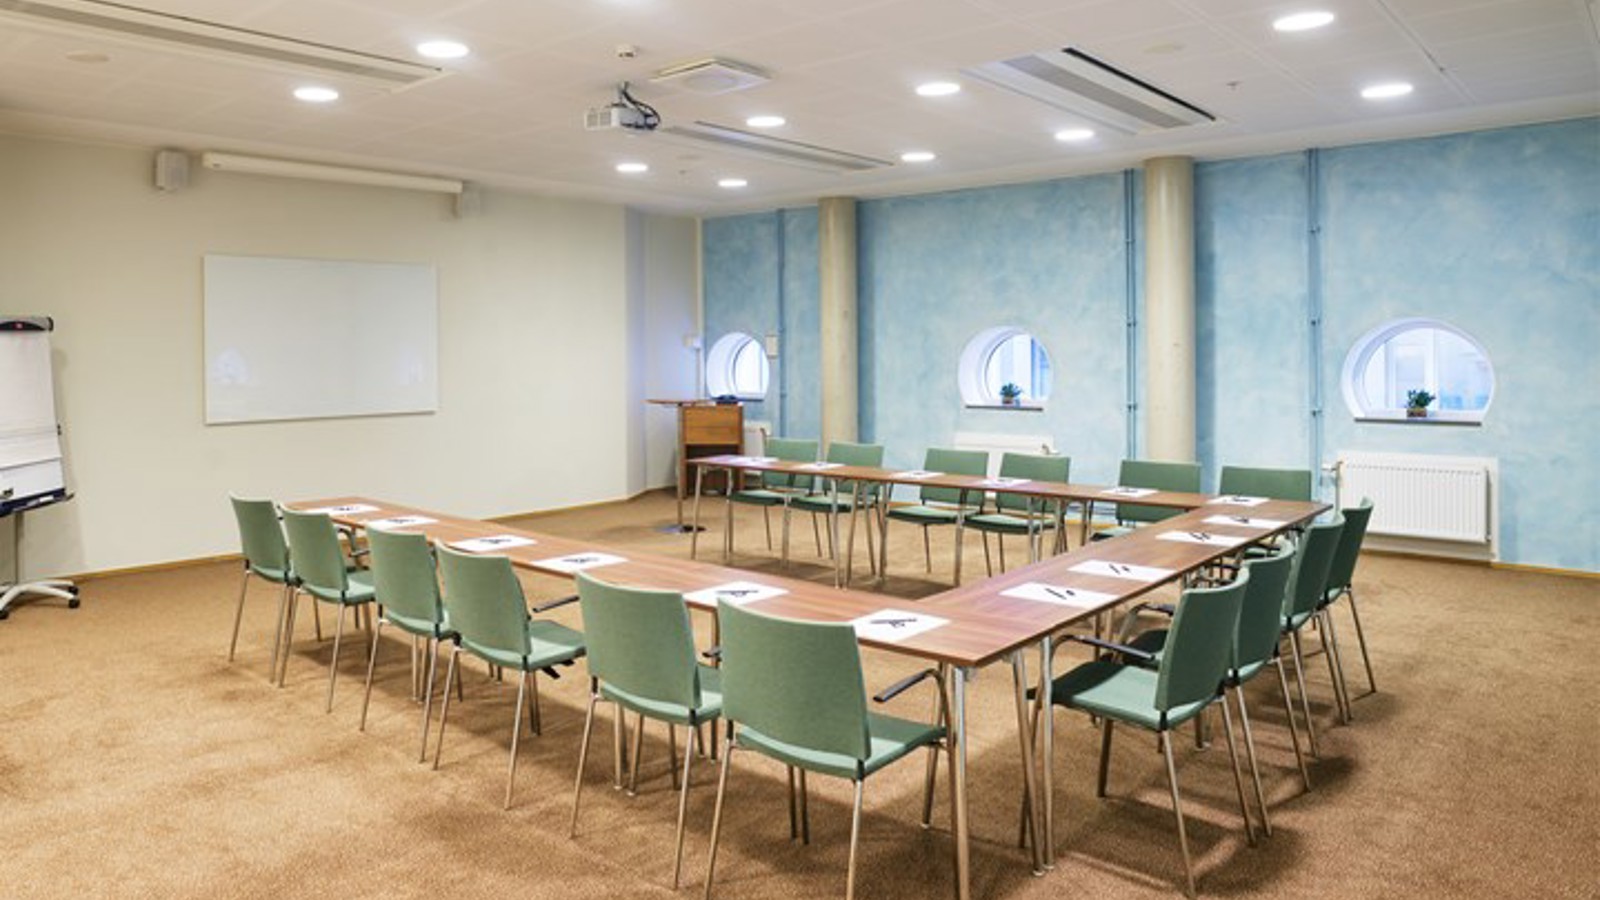 Konferensrum med u-sittning, ljusblå fondvägg och runda fönstrer